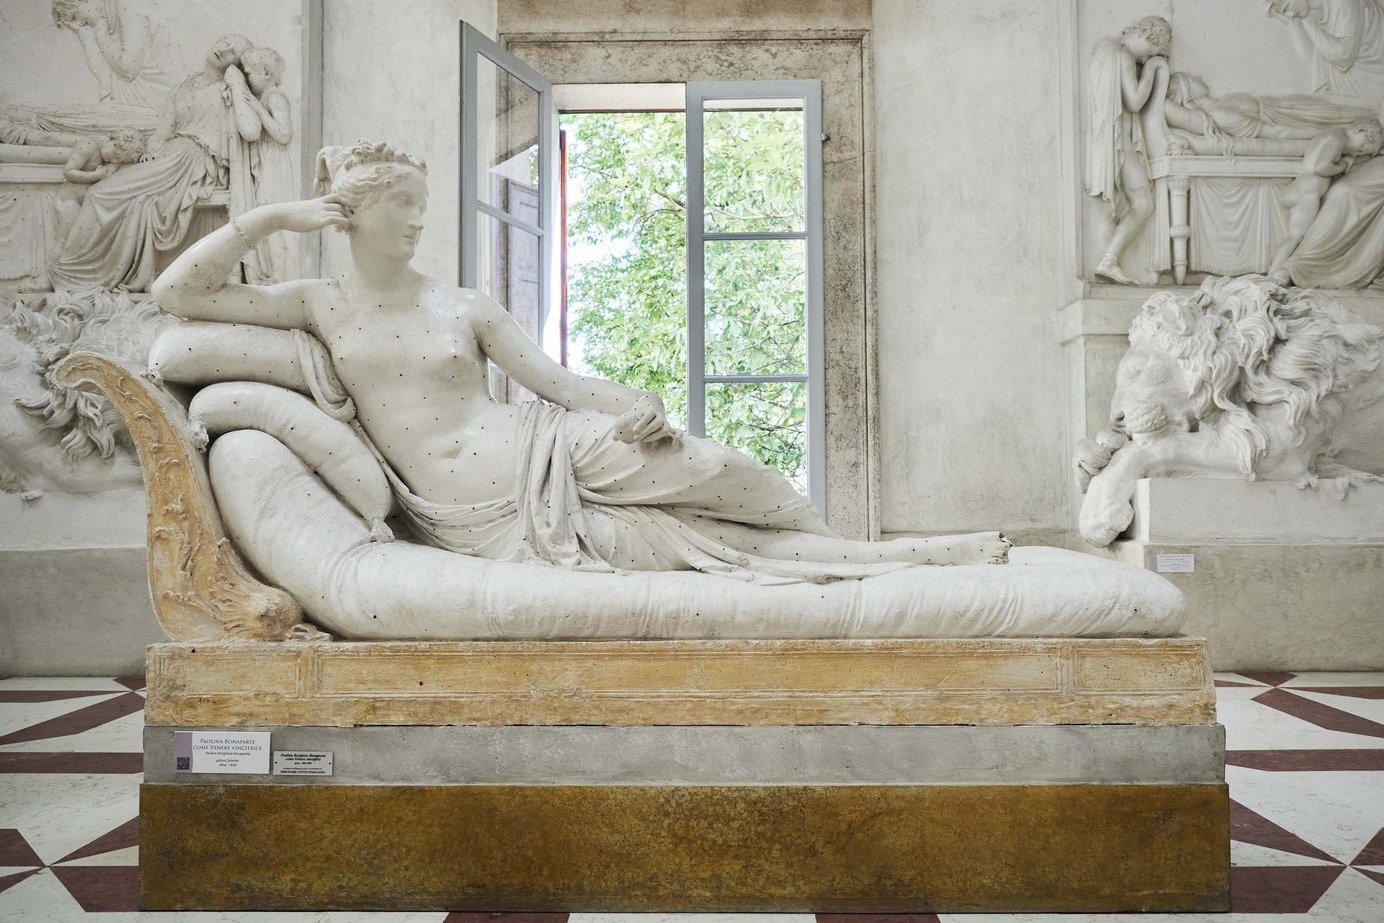 Очередной акт вандализма из-за фото: турист сломал 200-летней скульптуре Венеры два пальца на ноге, сев на неё  